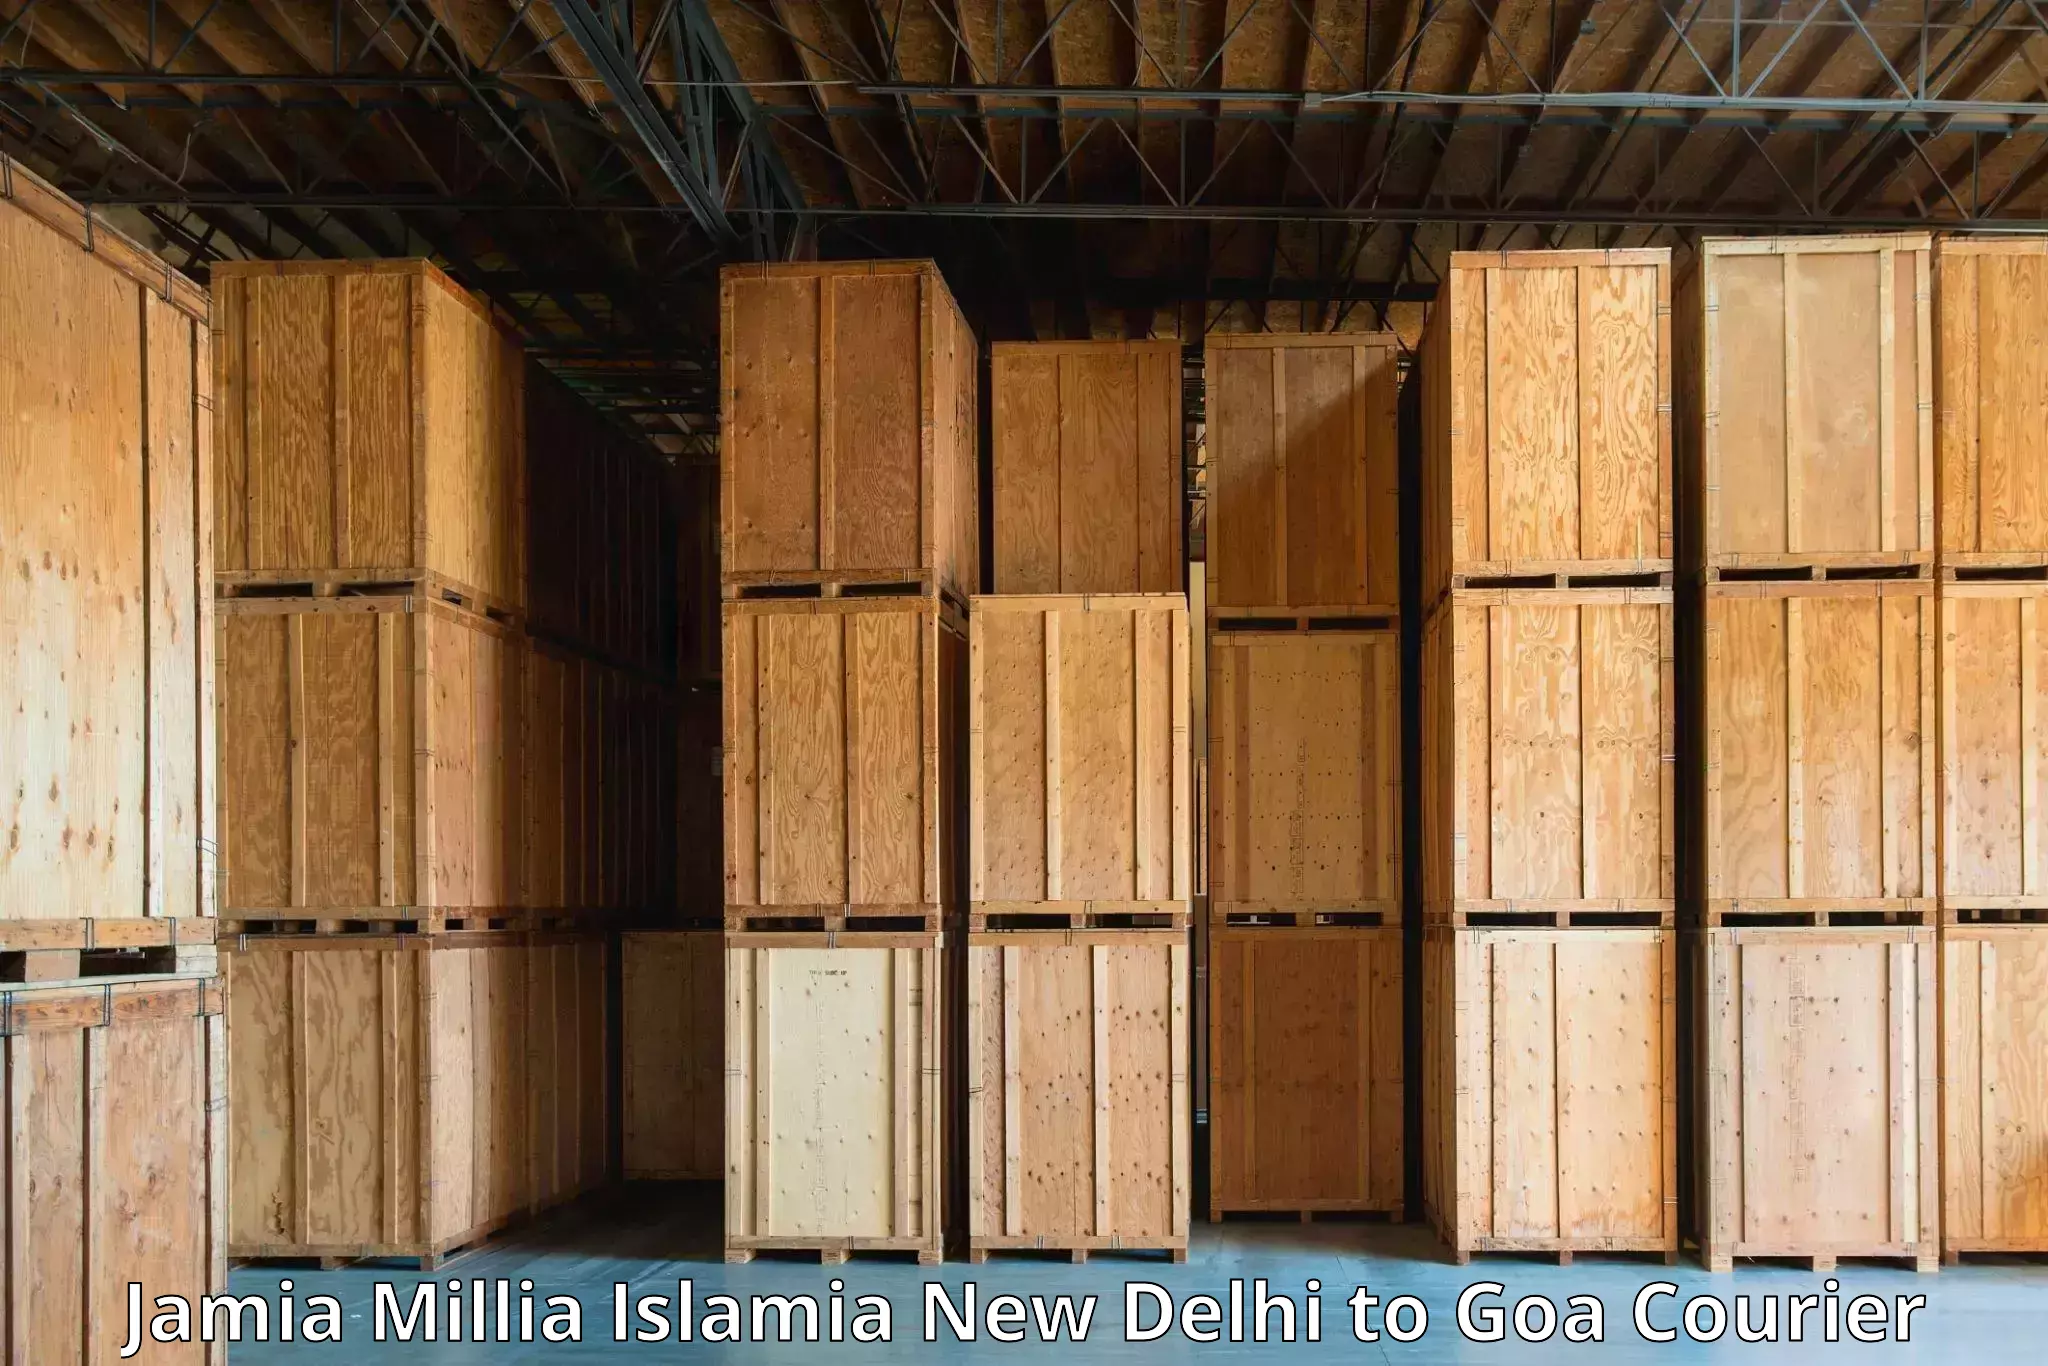 Scheduled delivery in Jamia Millia Islamia New Delhi to Vasco da Gama